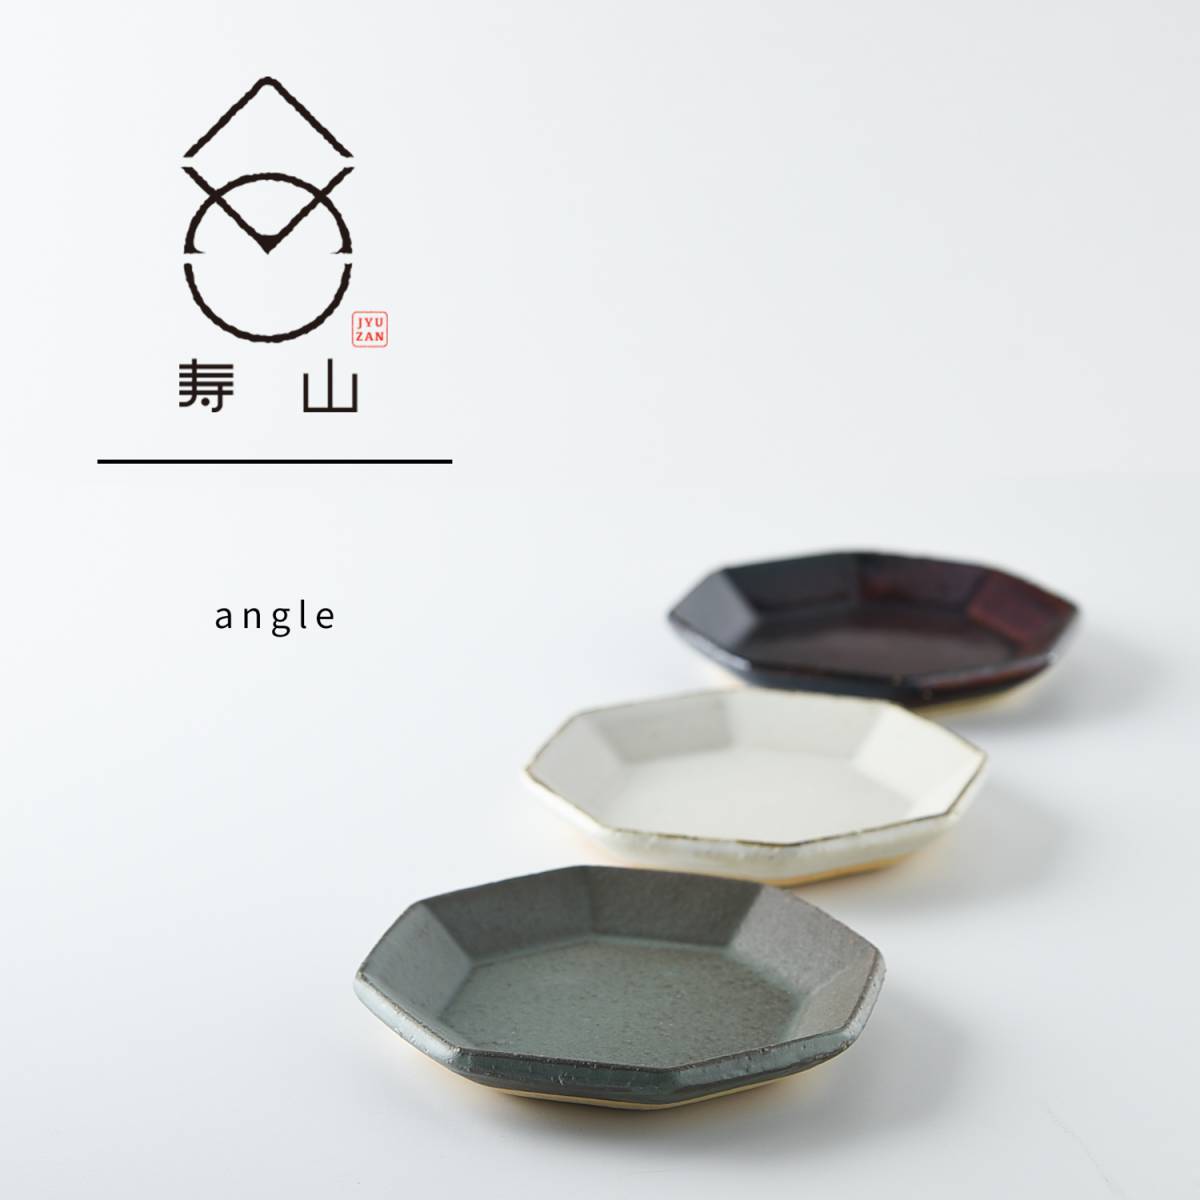 【箱入りギフト】寿山窯 angle アングル 11cmプレート 3色セット[美濃焼]